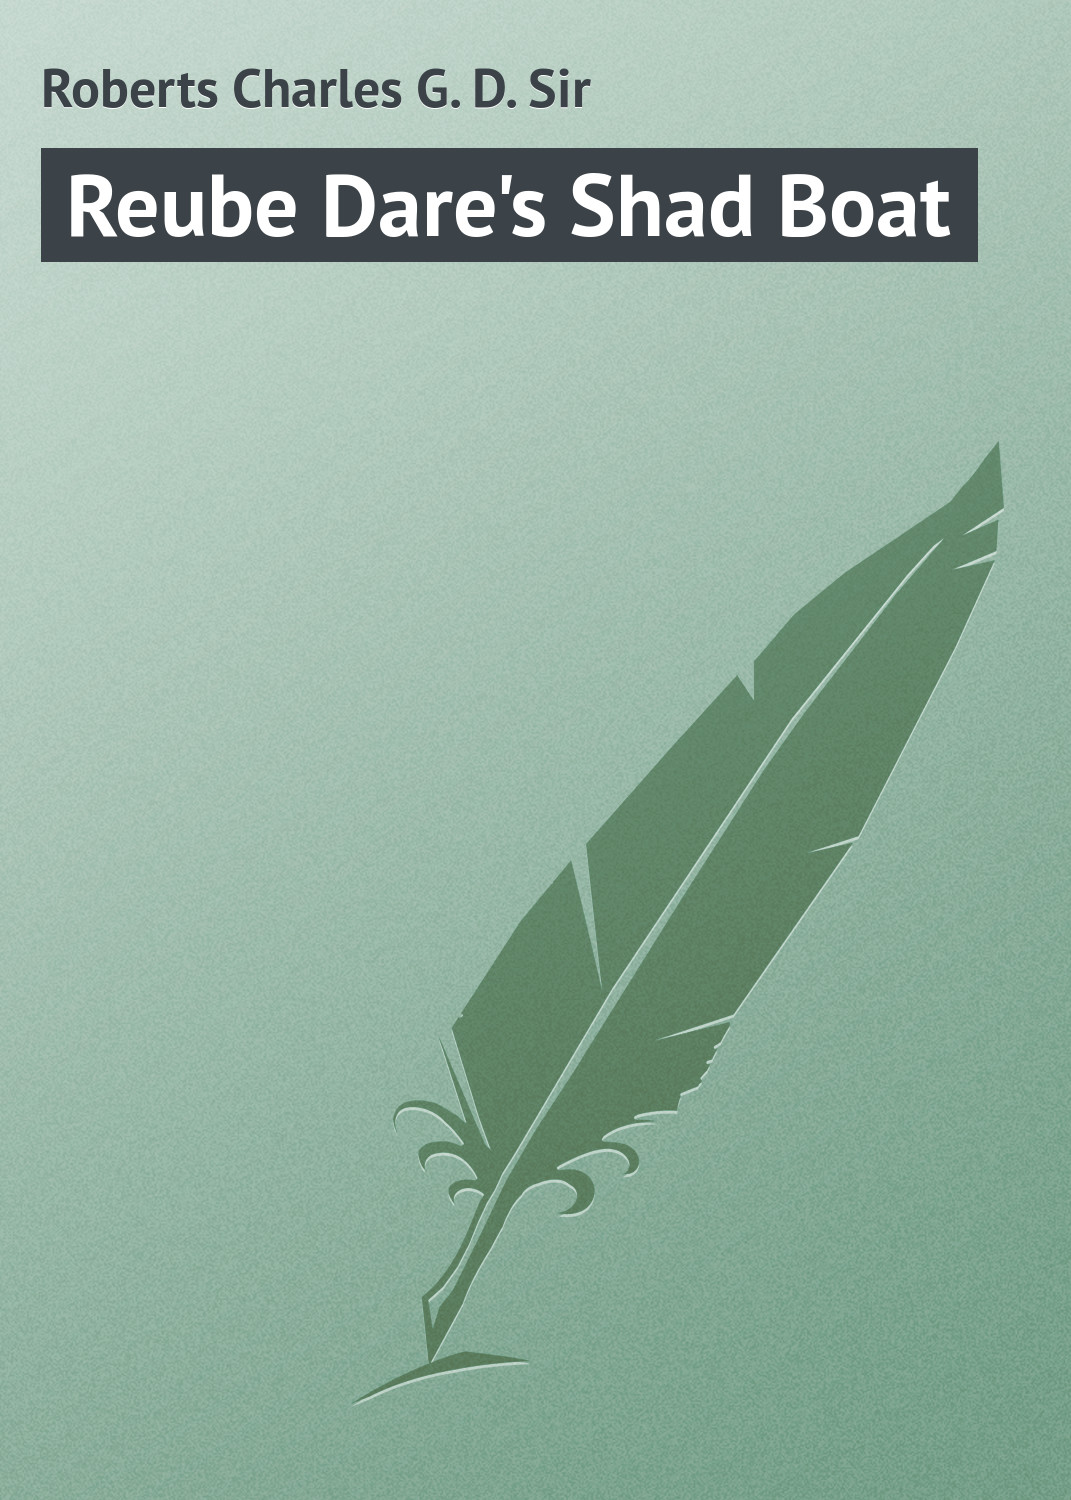 Книга Reube Dare's Shad Boat из серии , созданная Charles Roberts, может относится к жанру Иностранные языки, Зарубежная классика. Стоимость электронной книги Reube Dare's Shad Boat с идентификатором 23171859 составляет 5.99 руб.